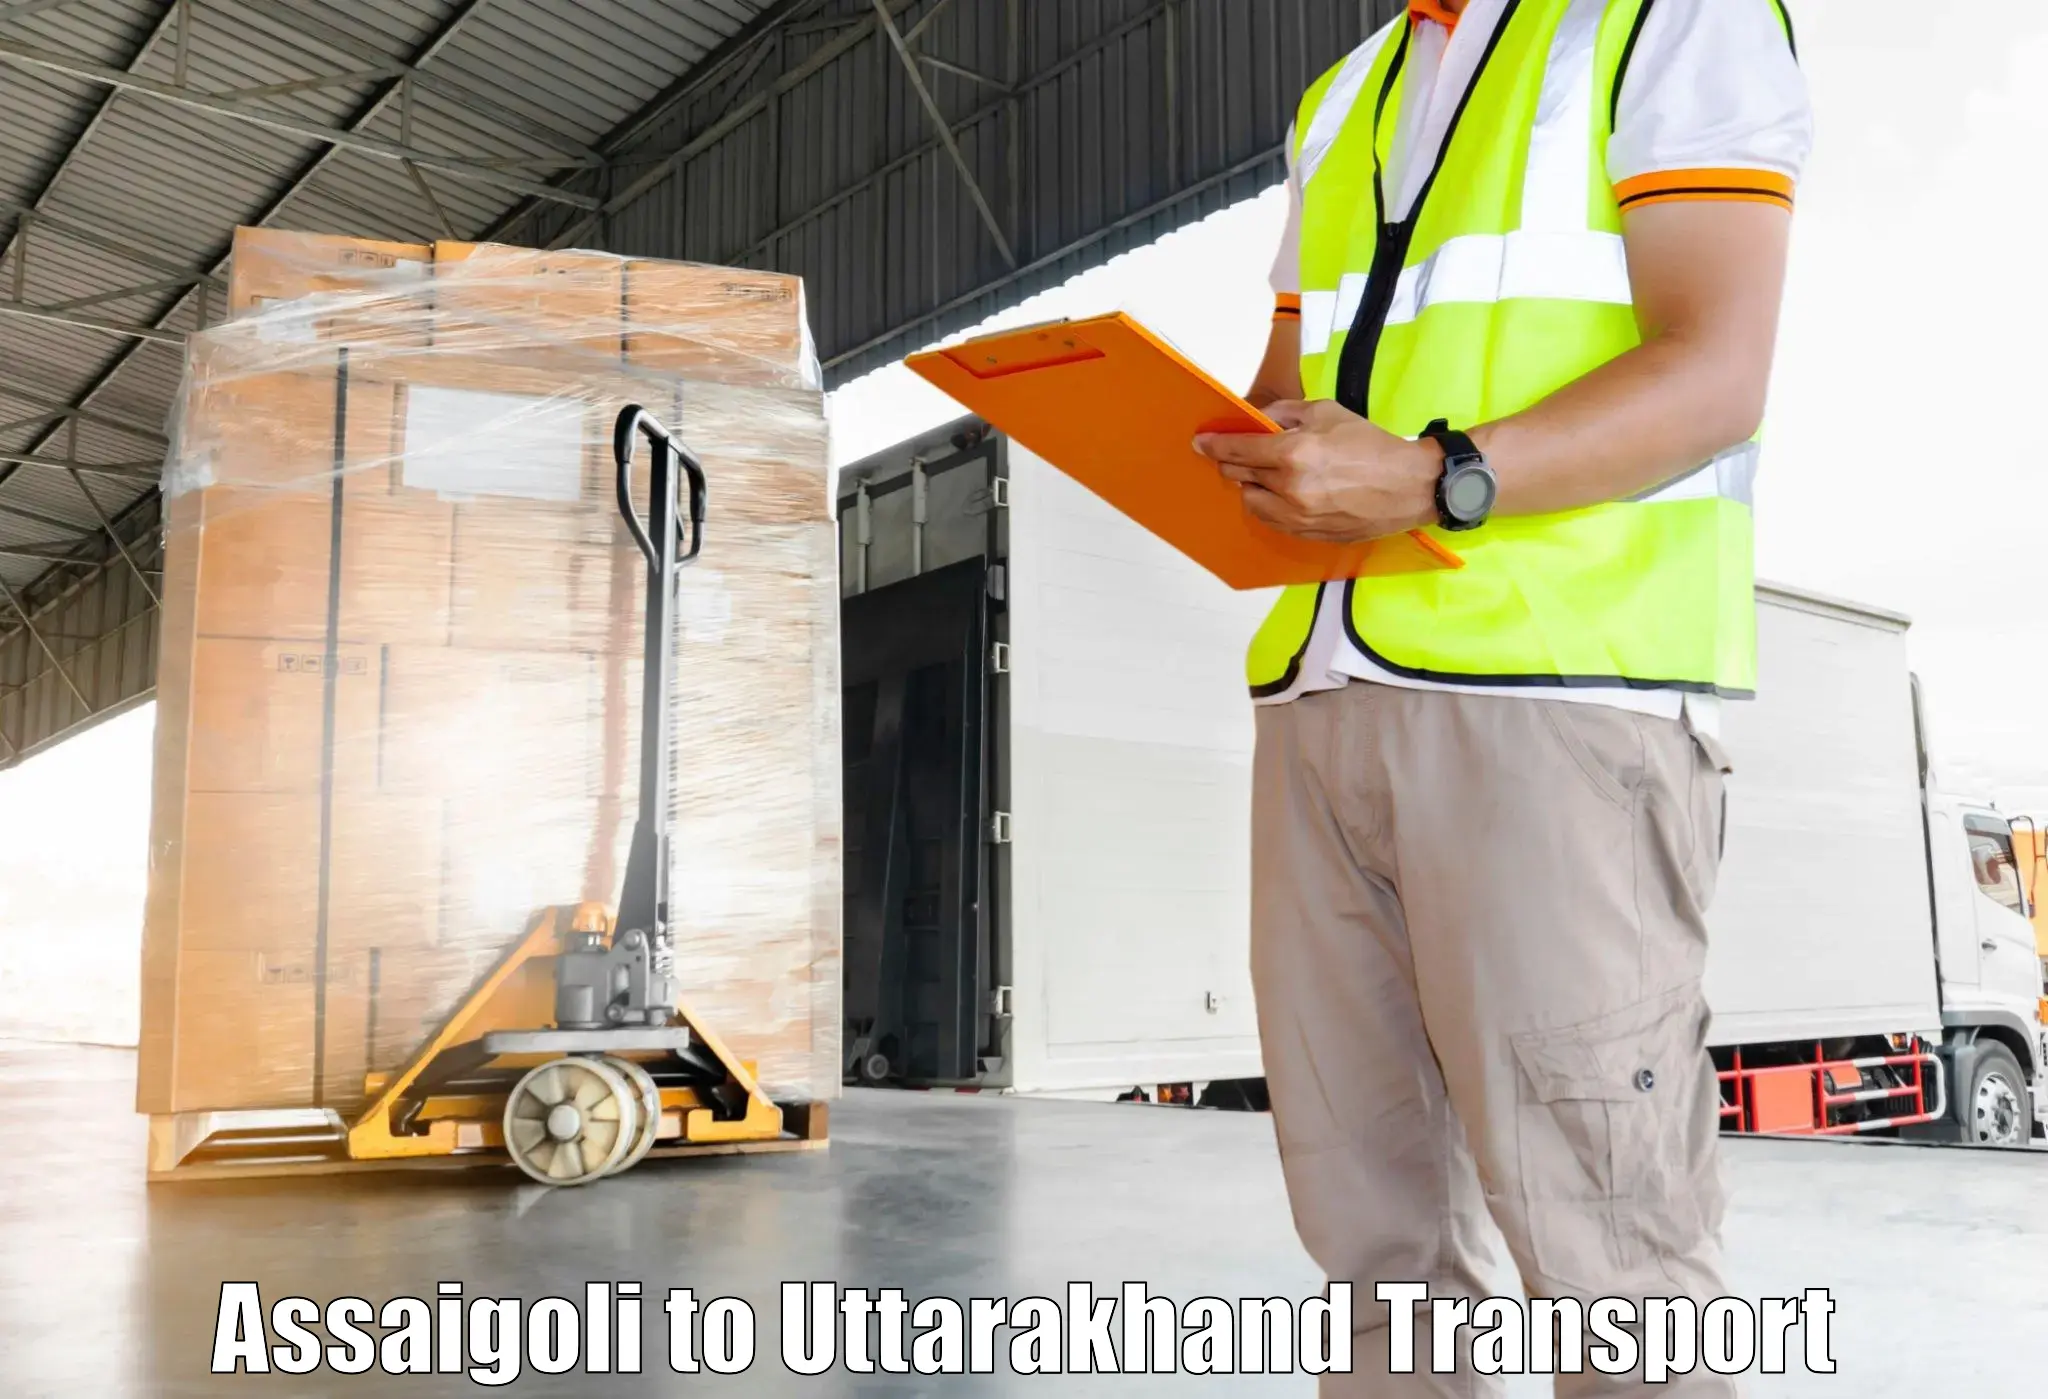 Nearest transport service Assaigoli to Haridwar